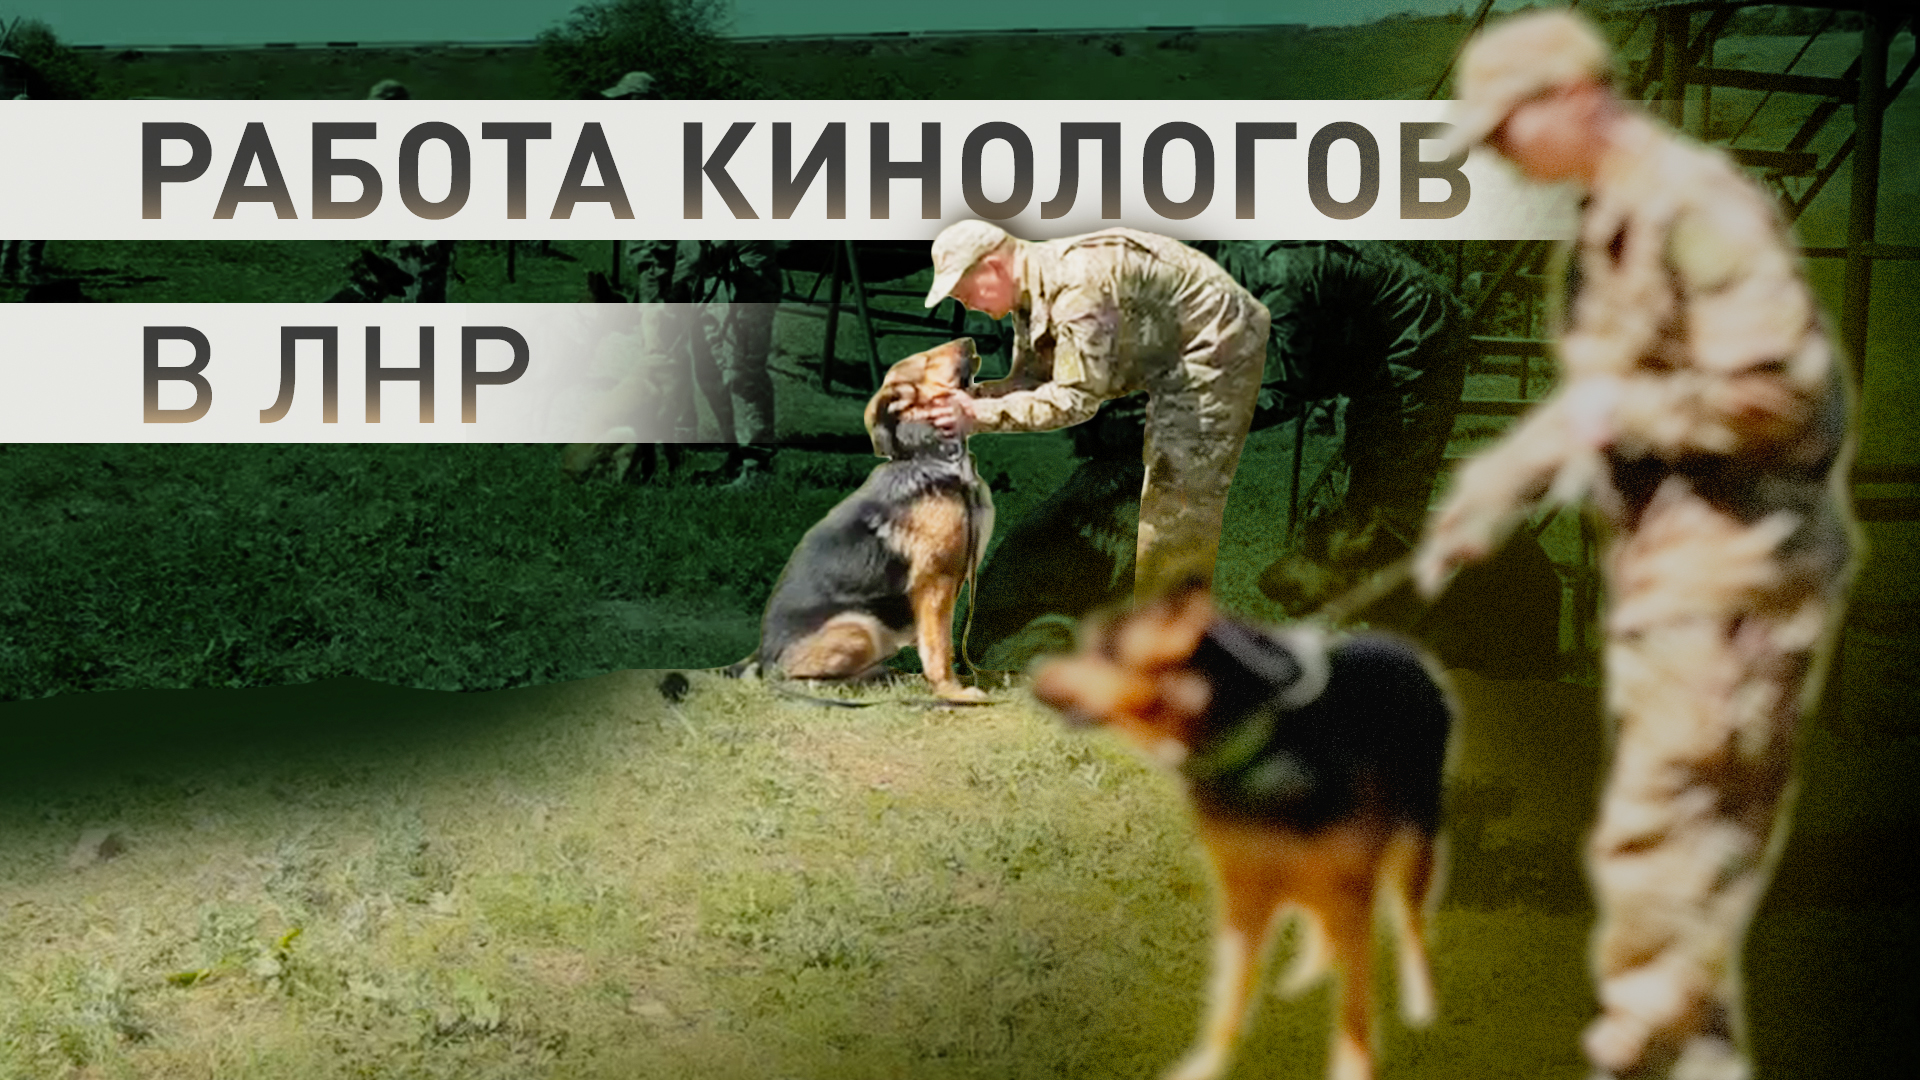 Охрана объектов и поиск мин: как работают служебные собаки в зоне СВО